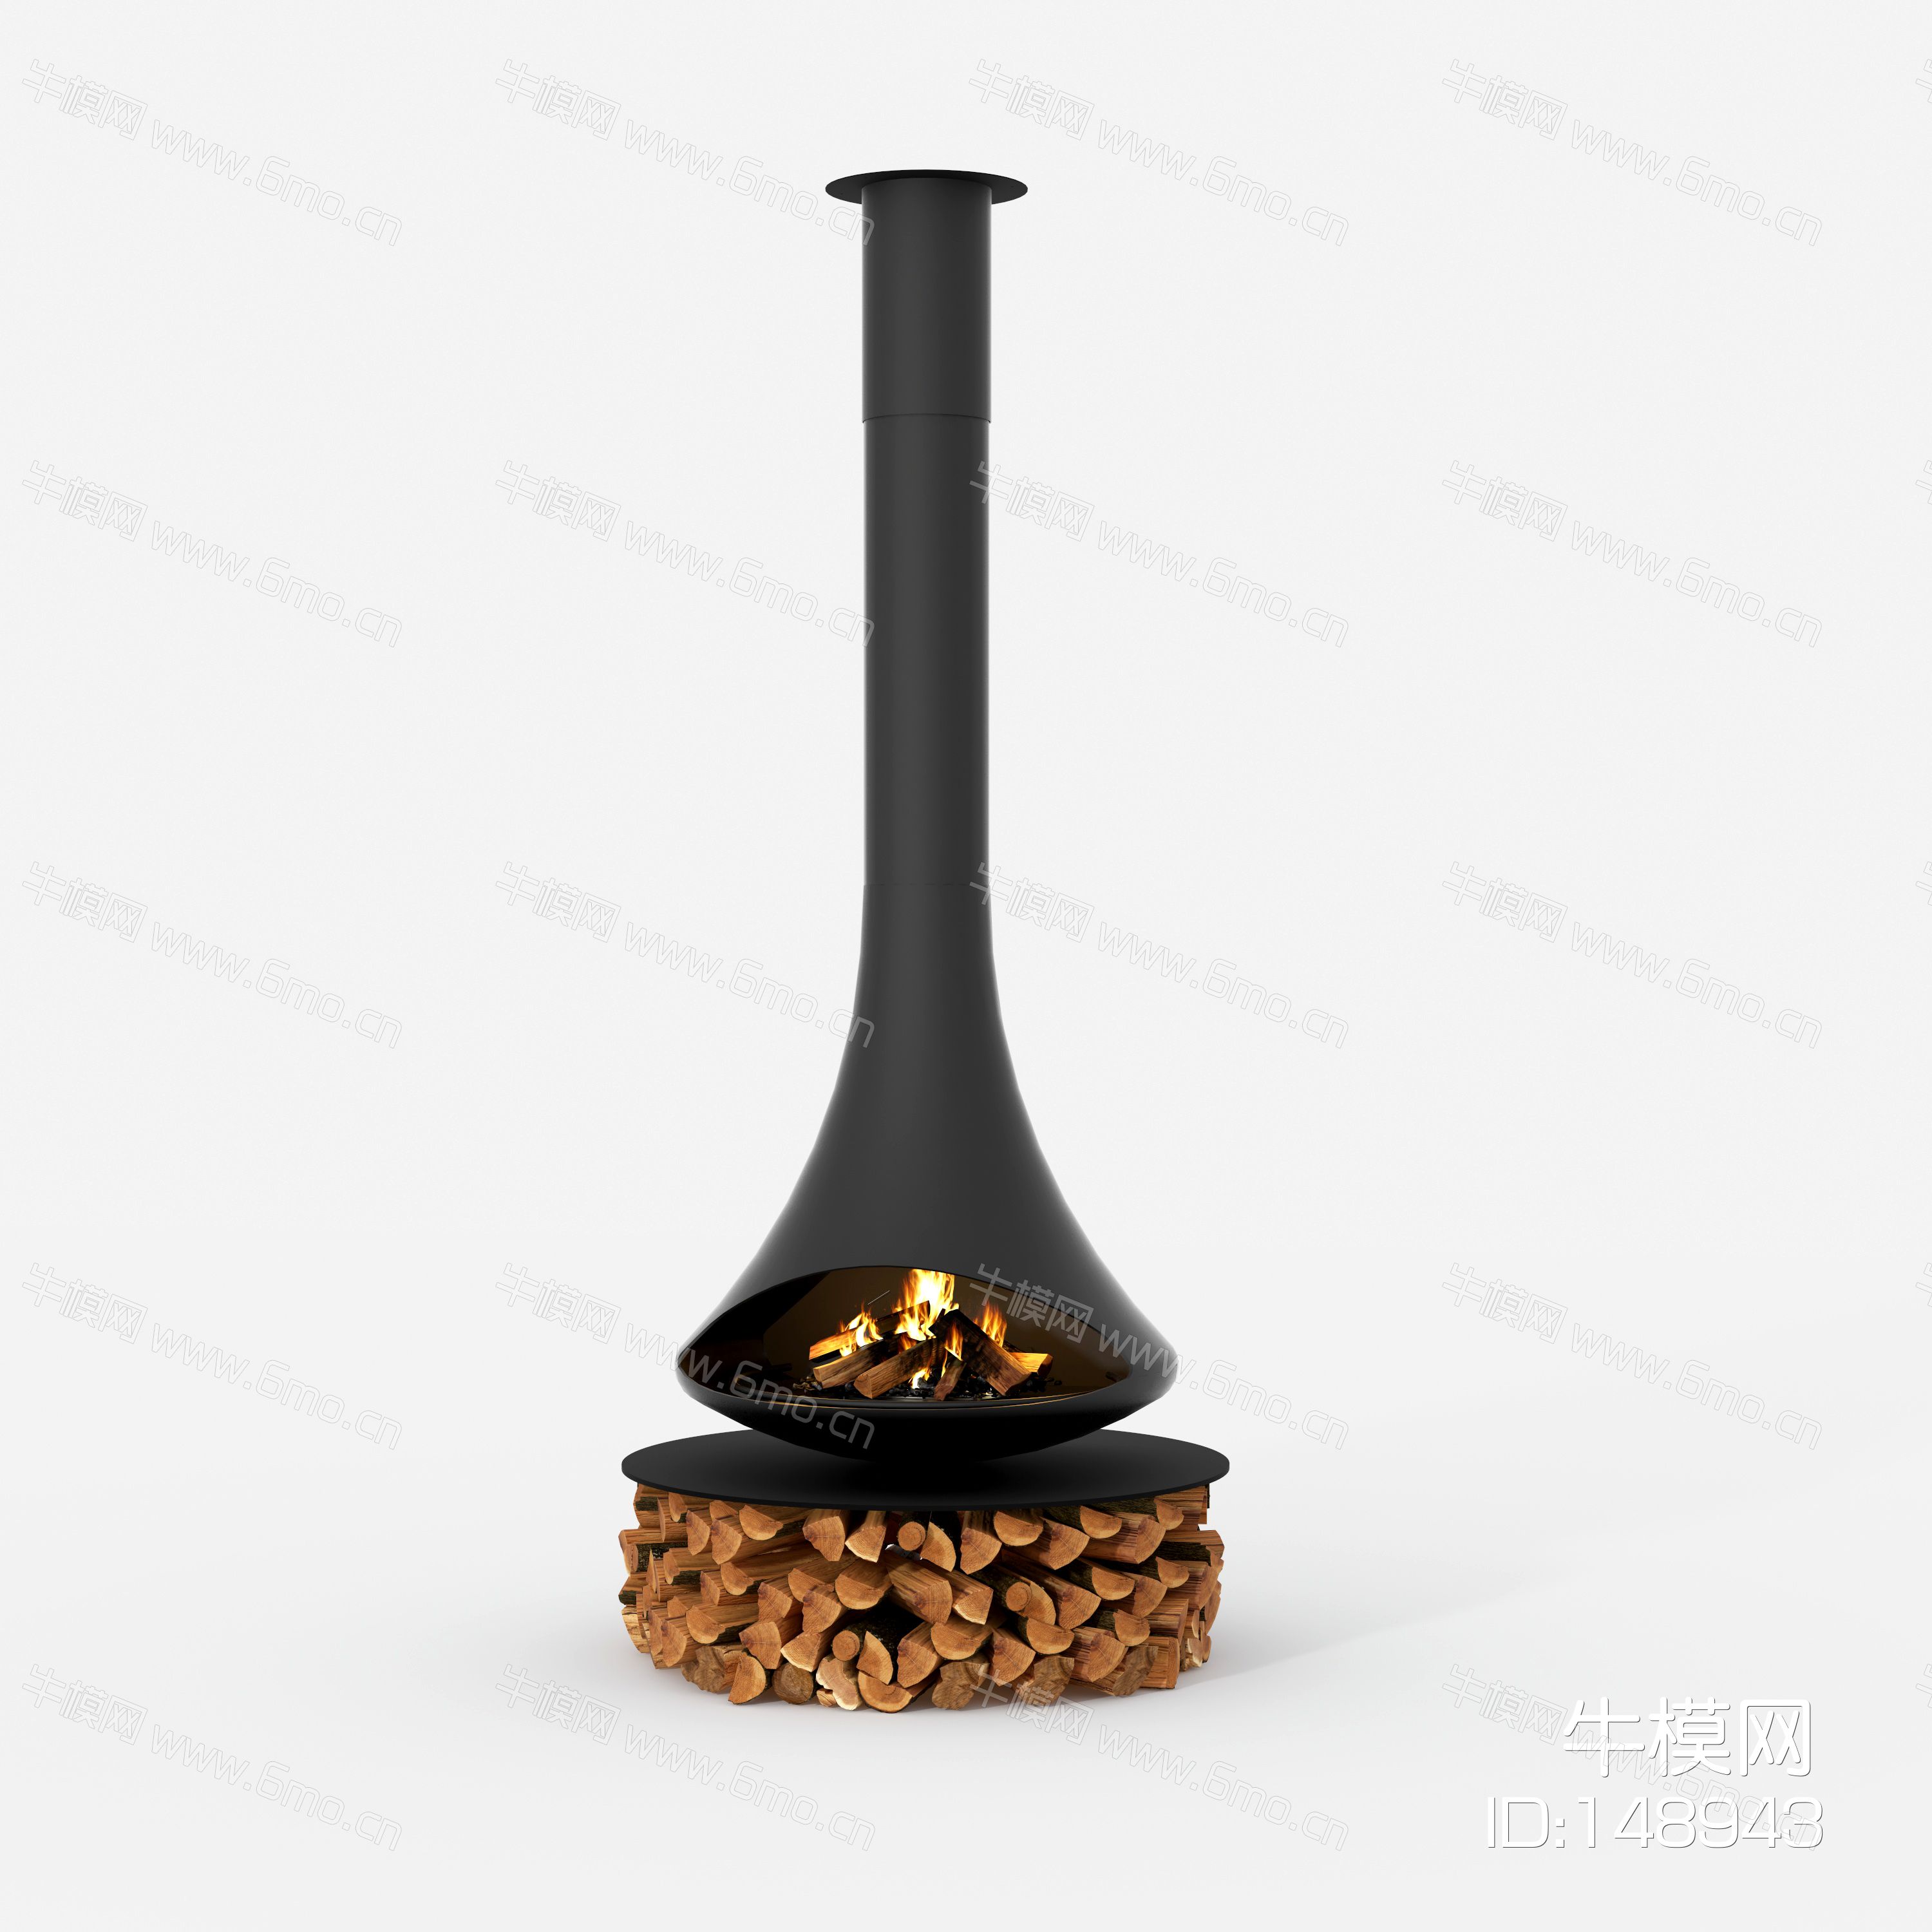 西班牙Traforart进口悬挂真火燃木壁炉15号doria 朵芮亚    中央款2020版